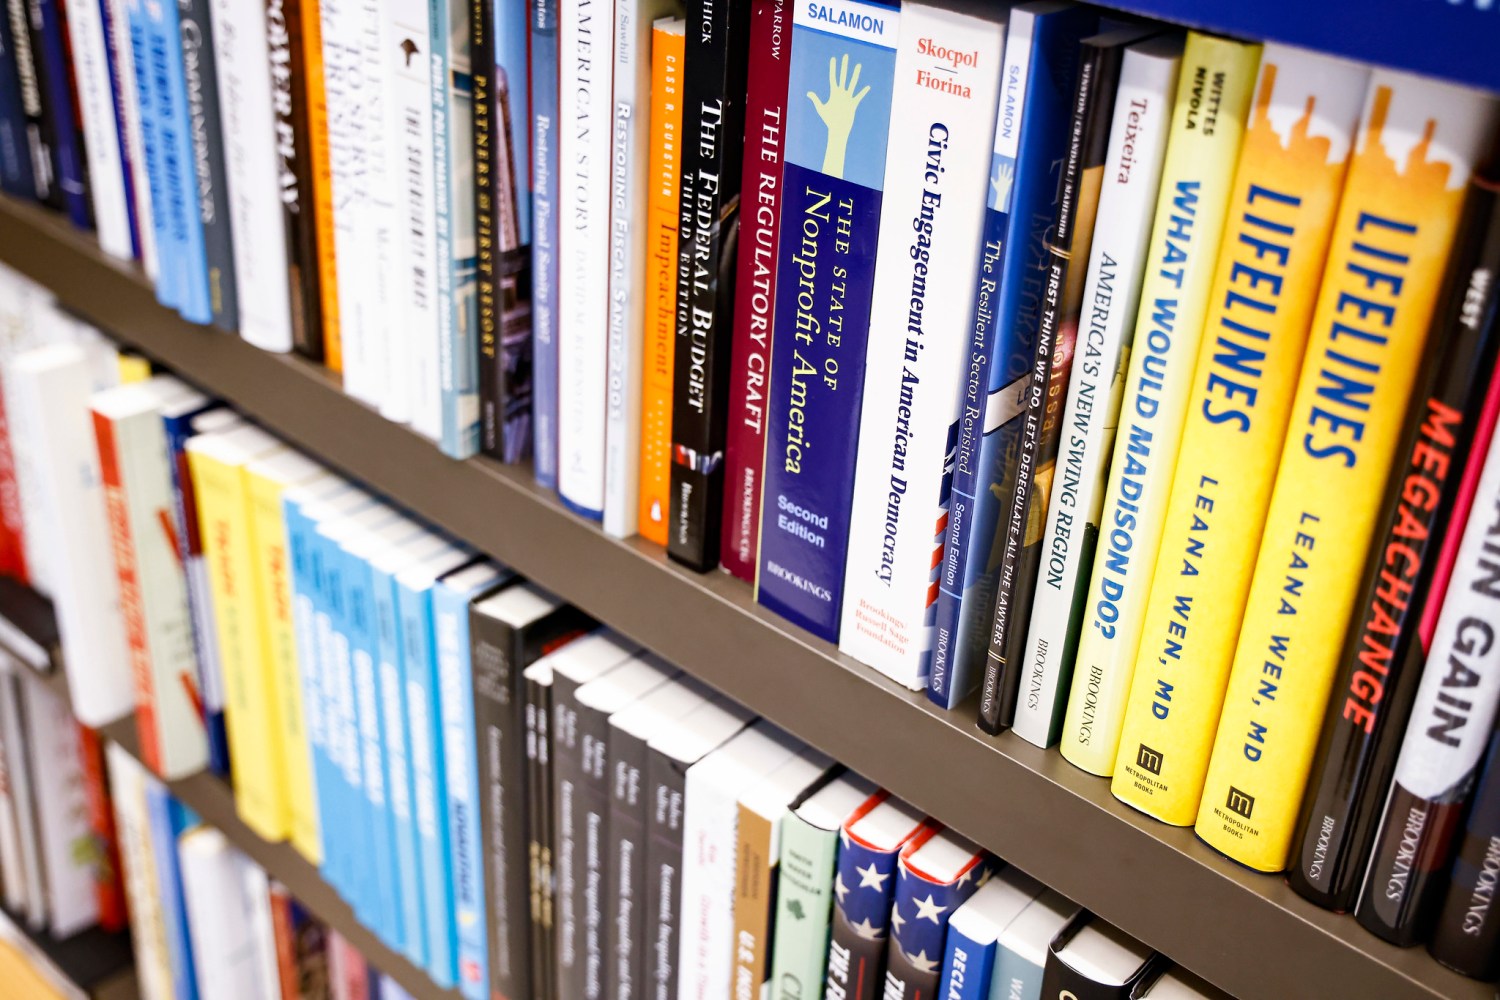 West Academic - Shop Law Books